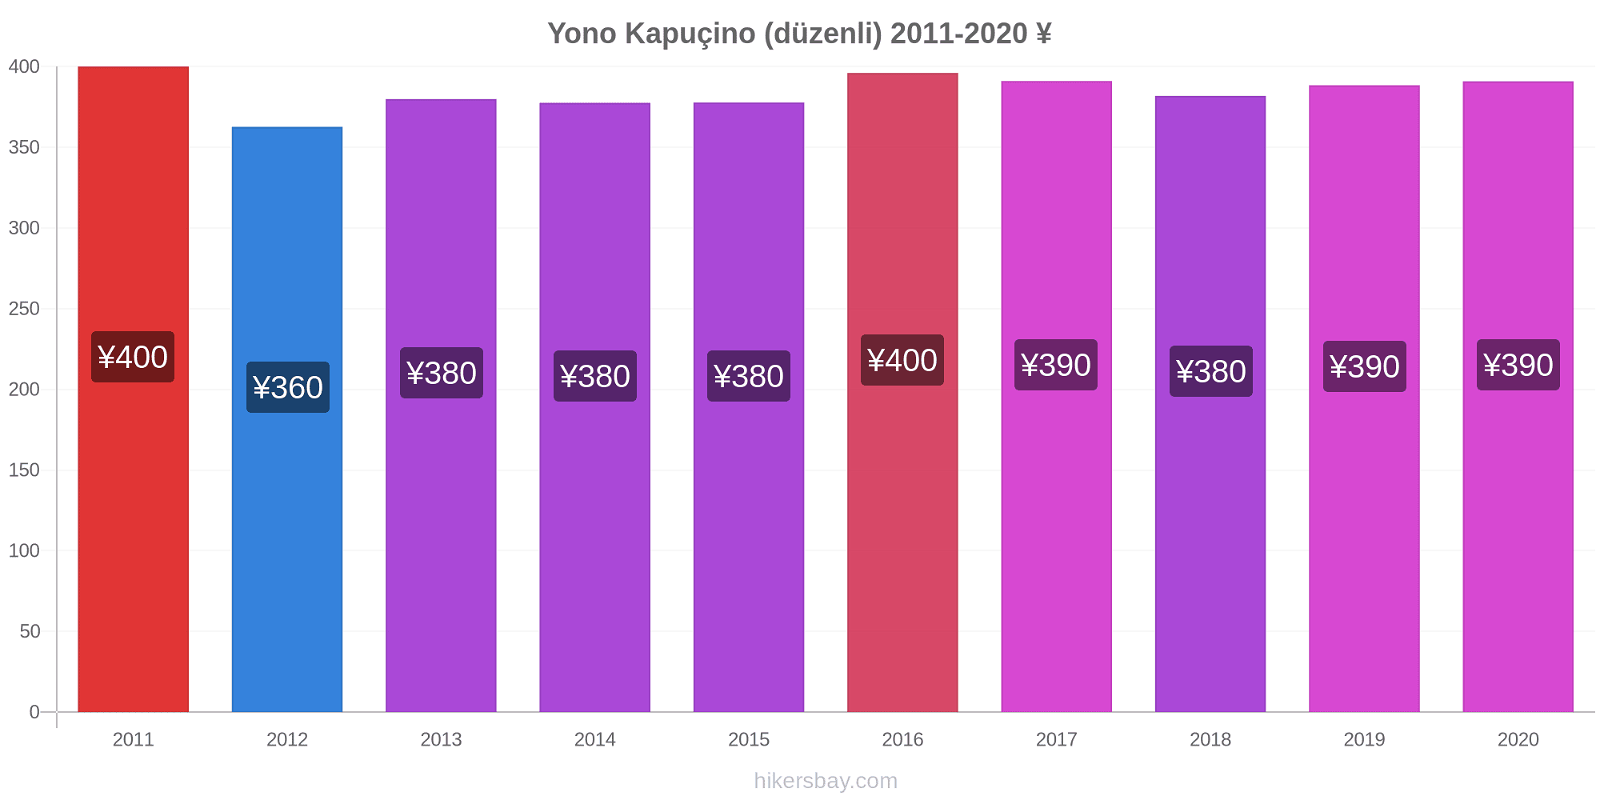 Yono fiyat değişiklikleri Kapuçino (düzenli) hikersbay.com